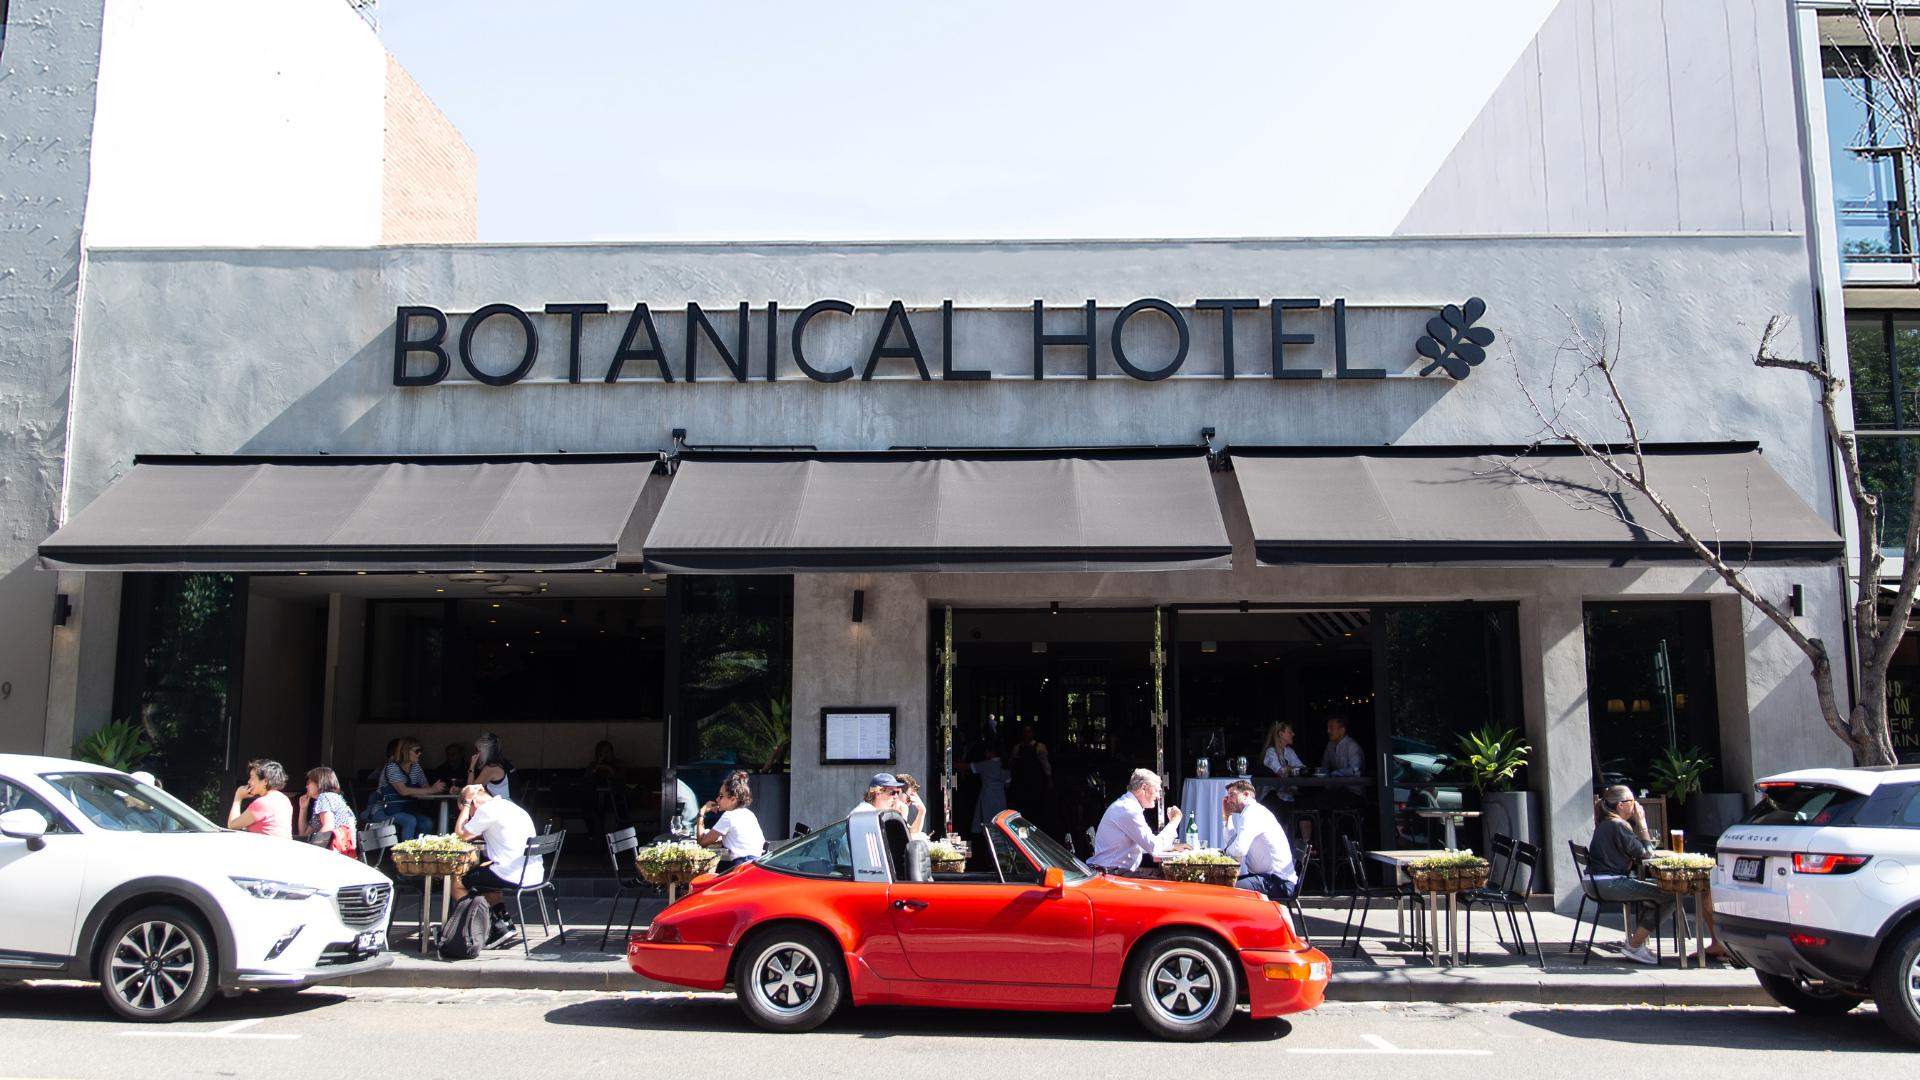 Botanical Hotel